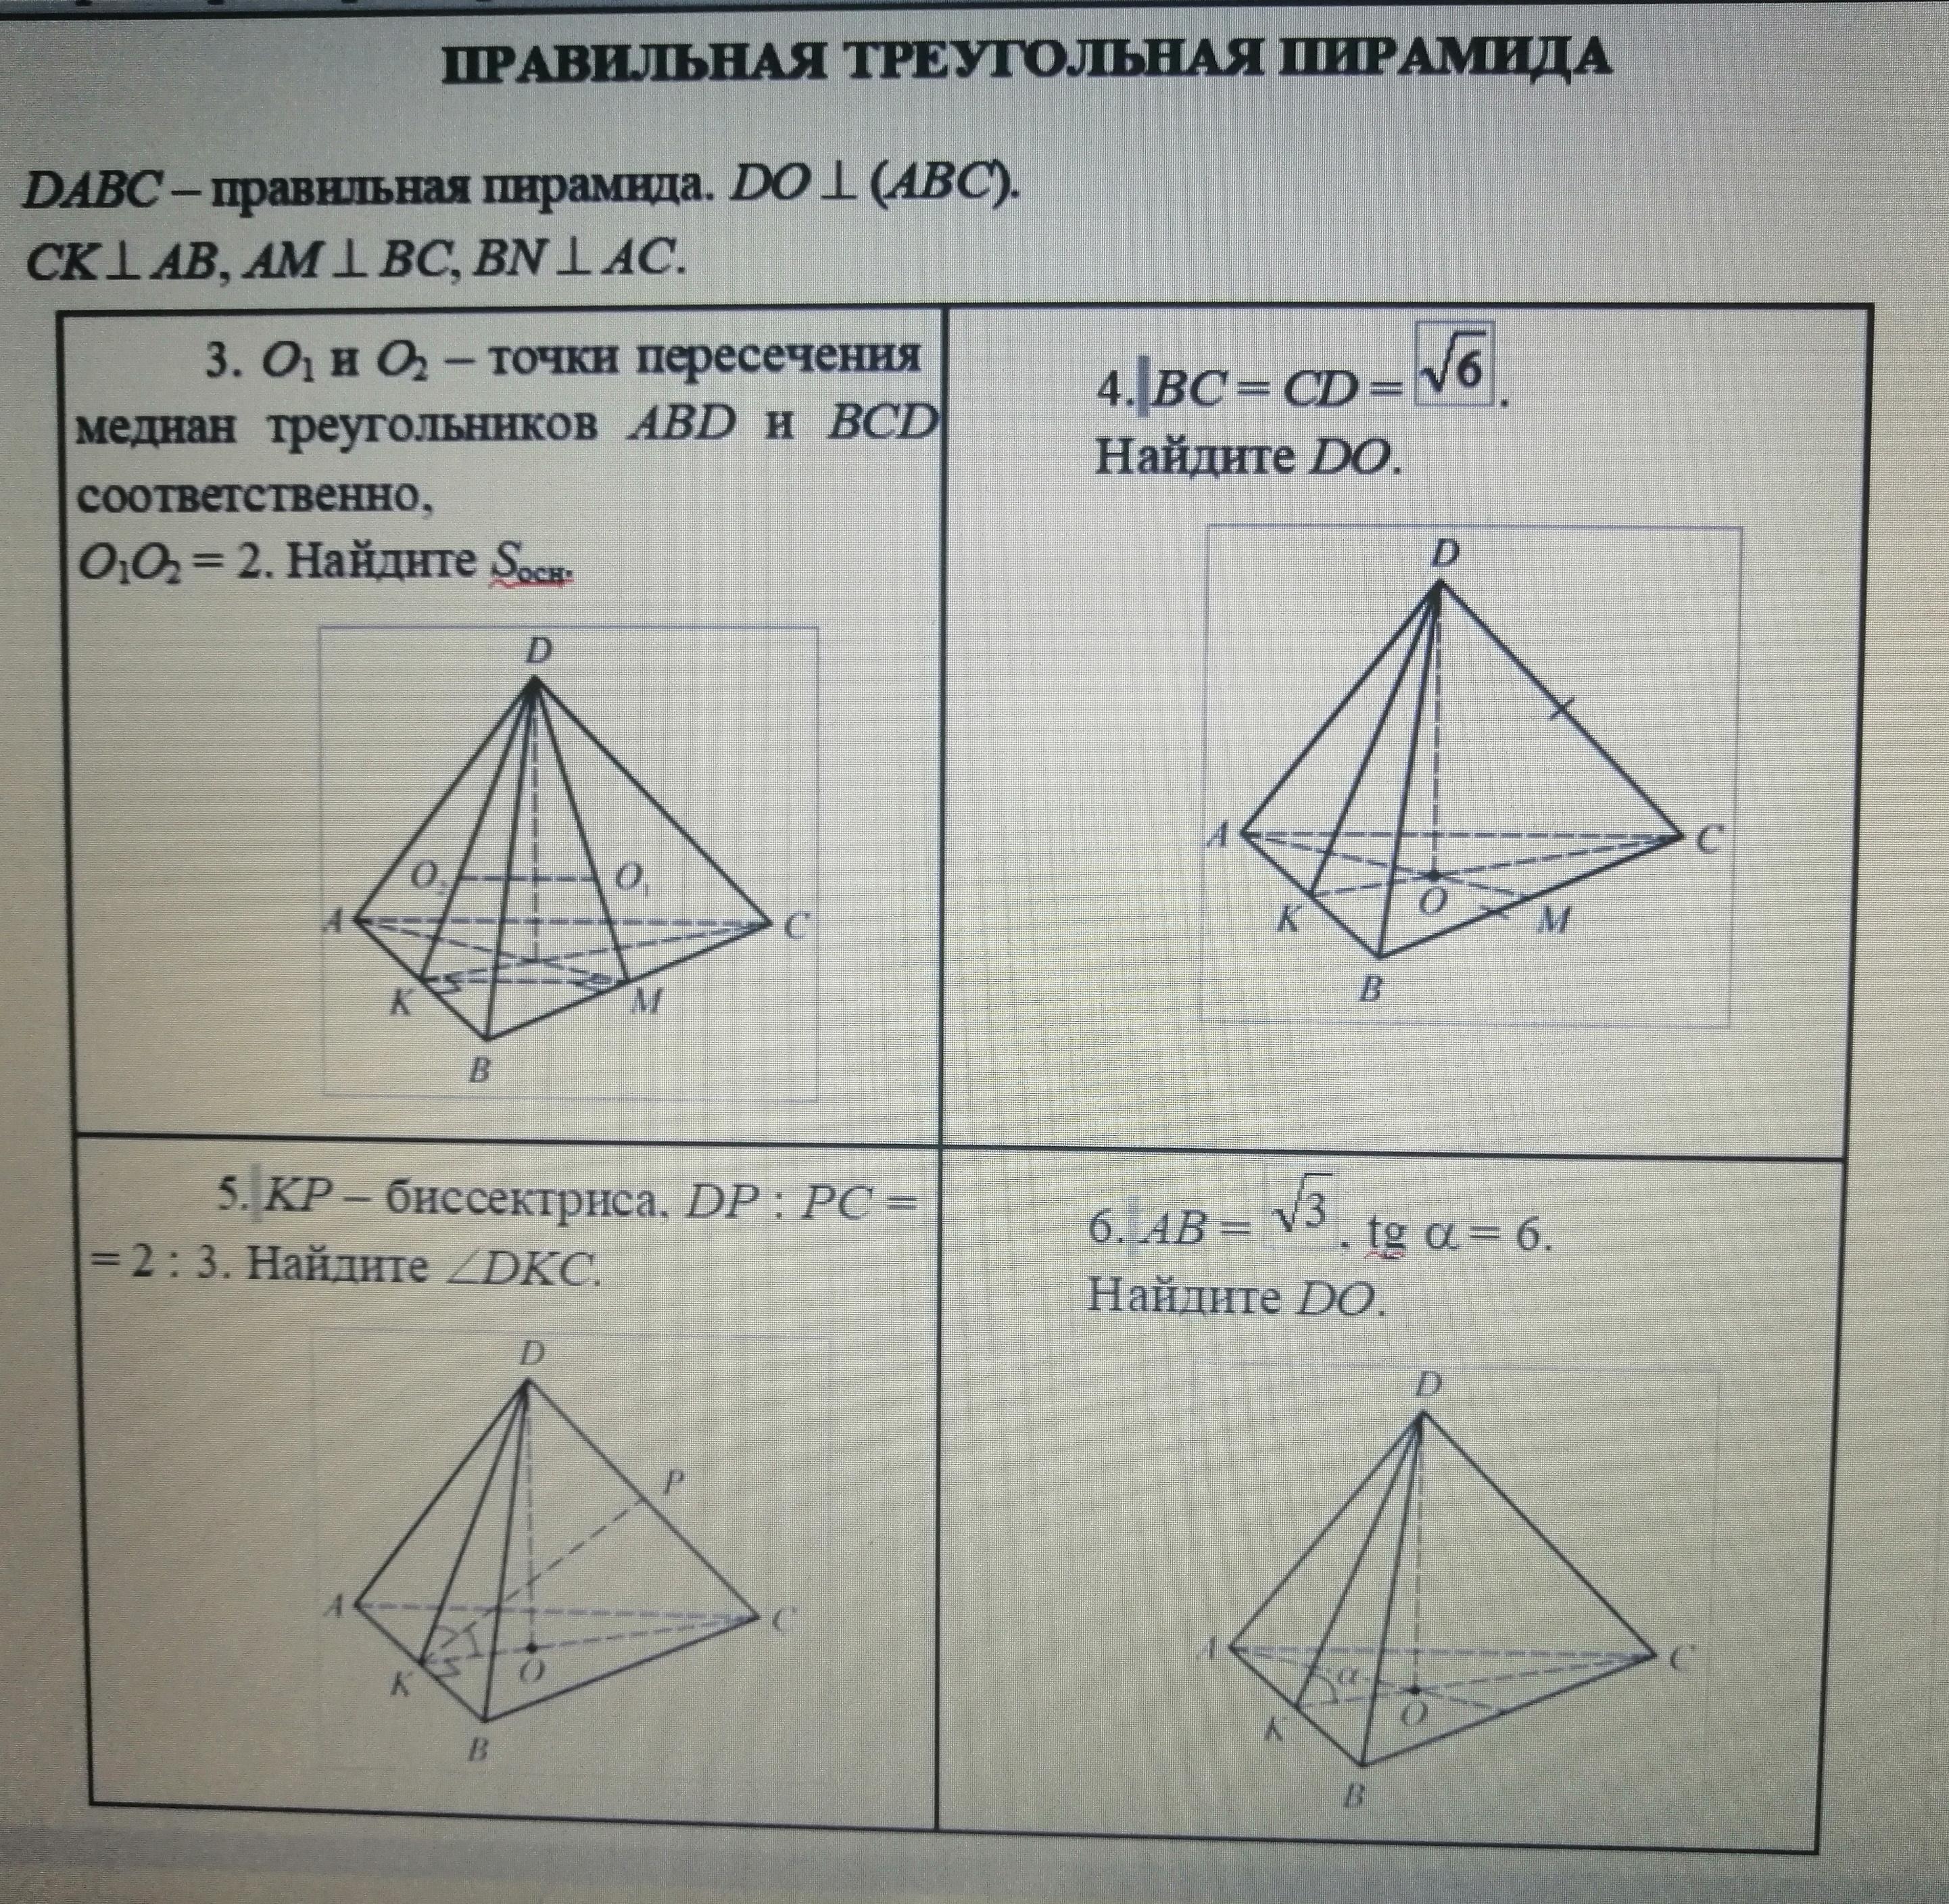 DABC правильная треугольная пирамида